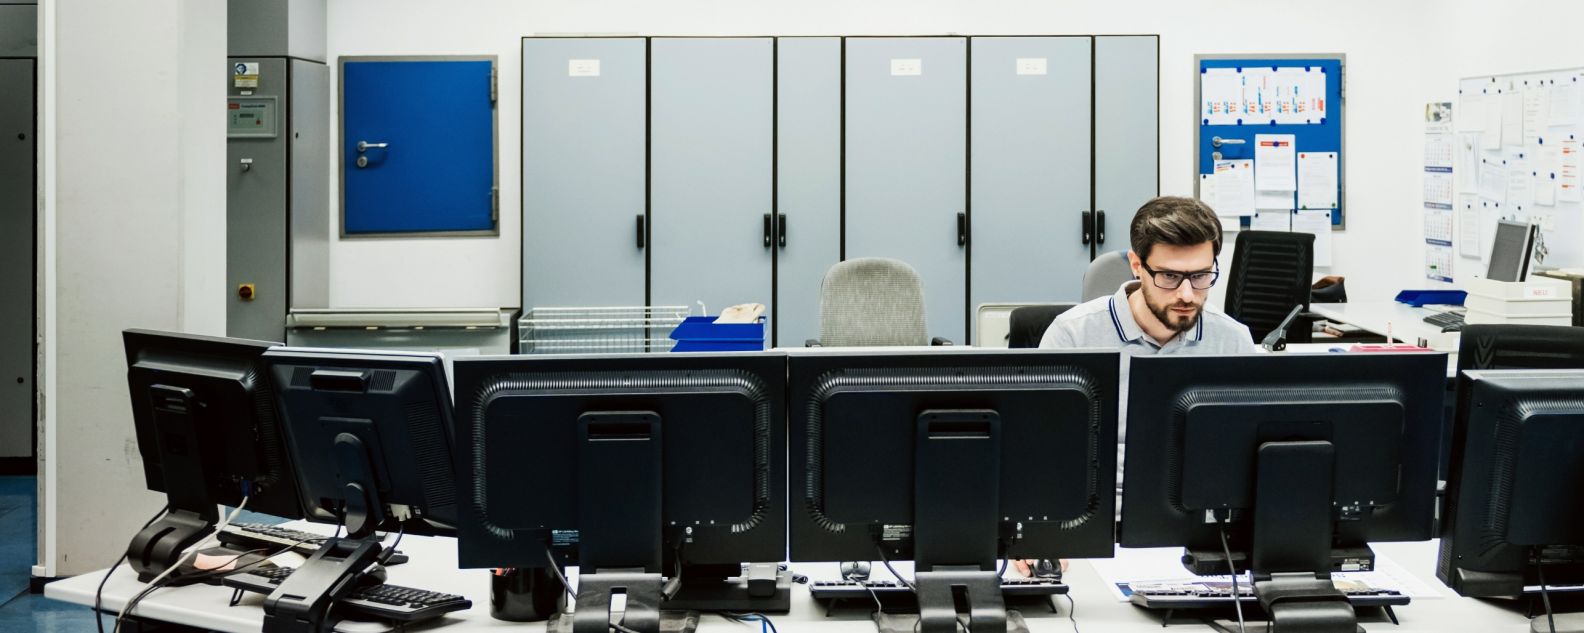 Une personne assise derrière une rangée d’ordinateurs de bureau